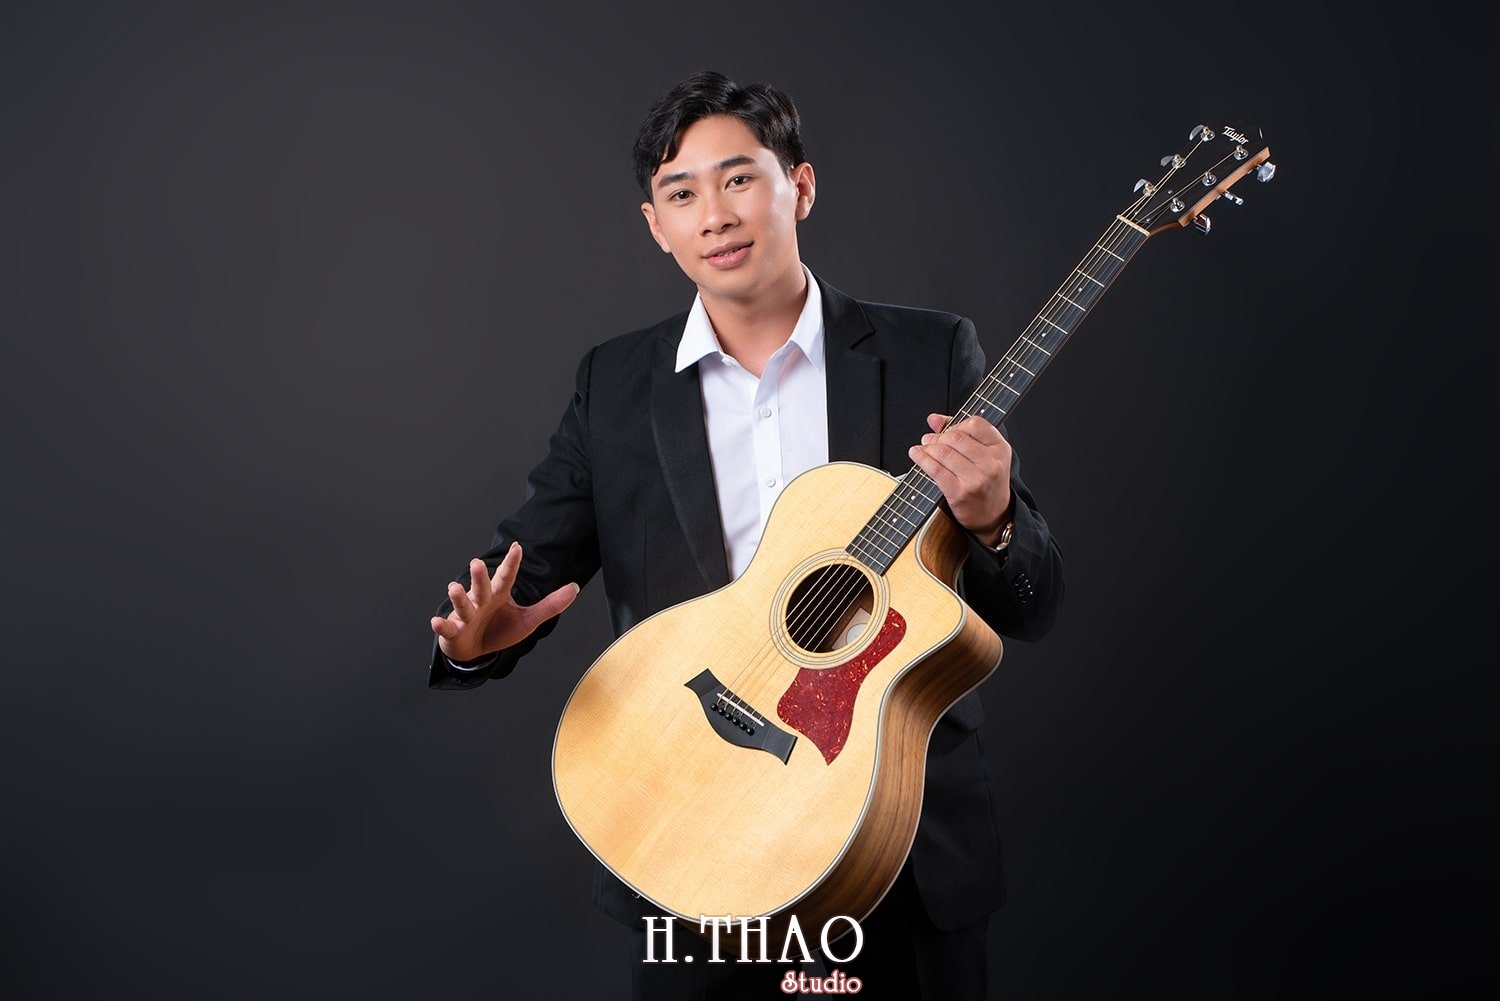 Anh profile 22 - Tổng hợp ảnh profile nghề nghiệp Tháng 3 - HThao Studio